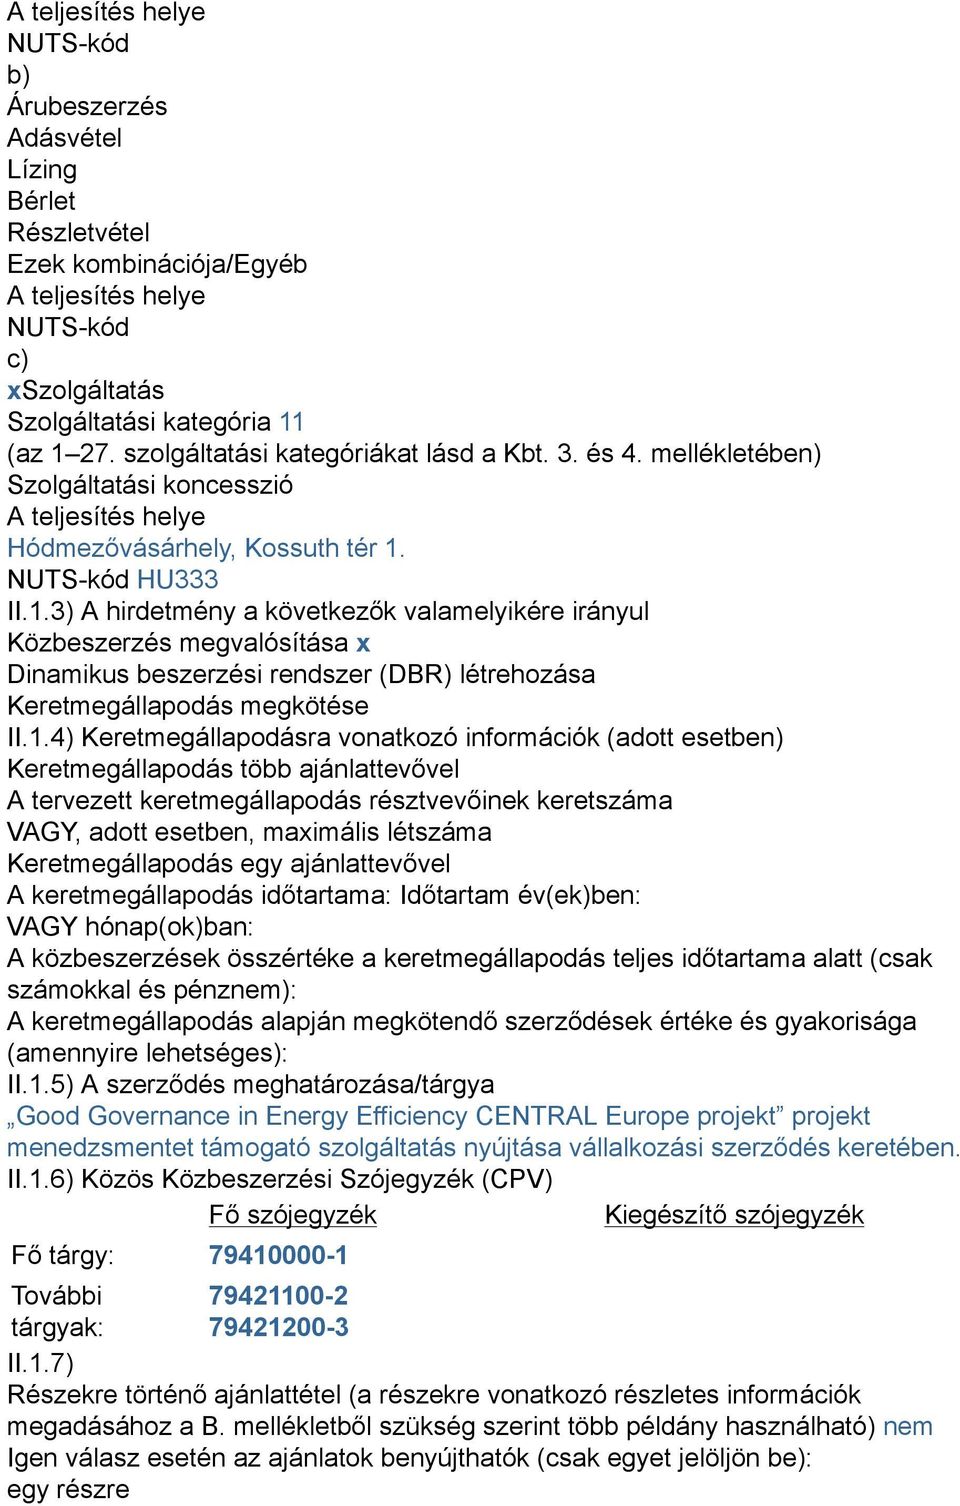 NUTS-kód HU333 II.1.